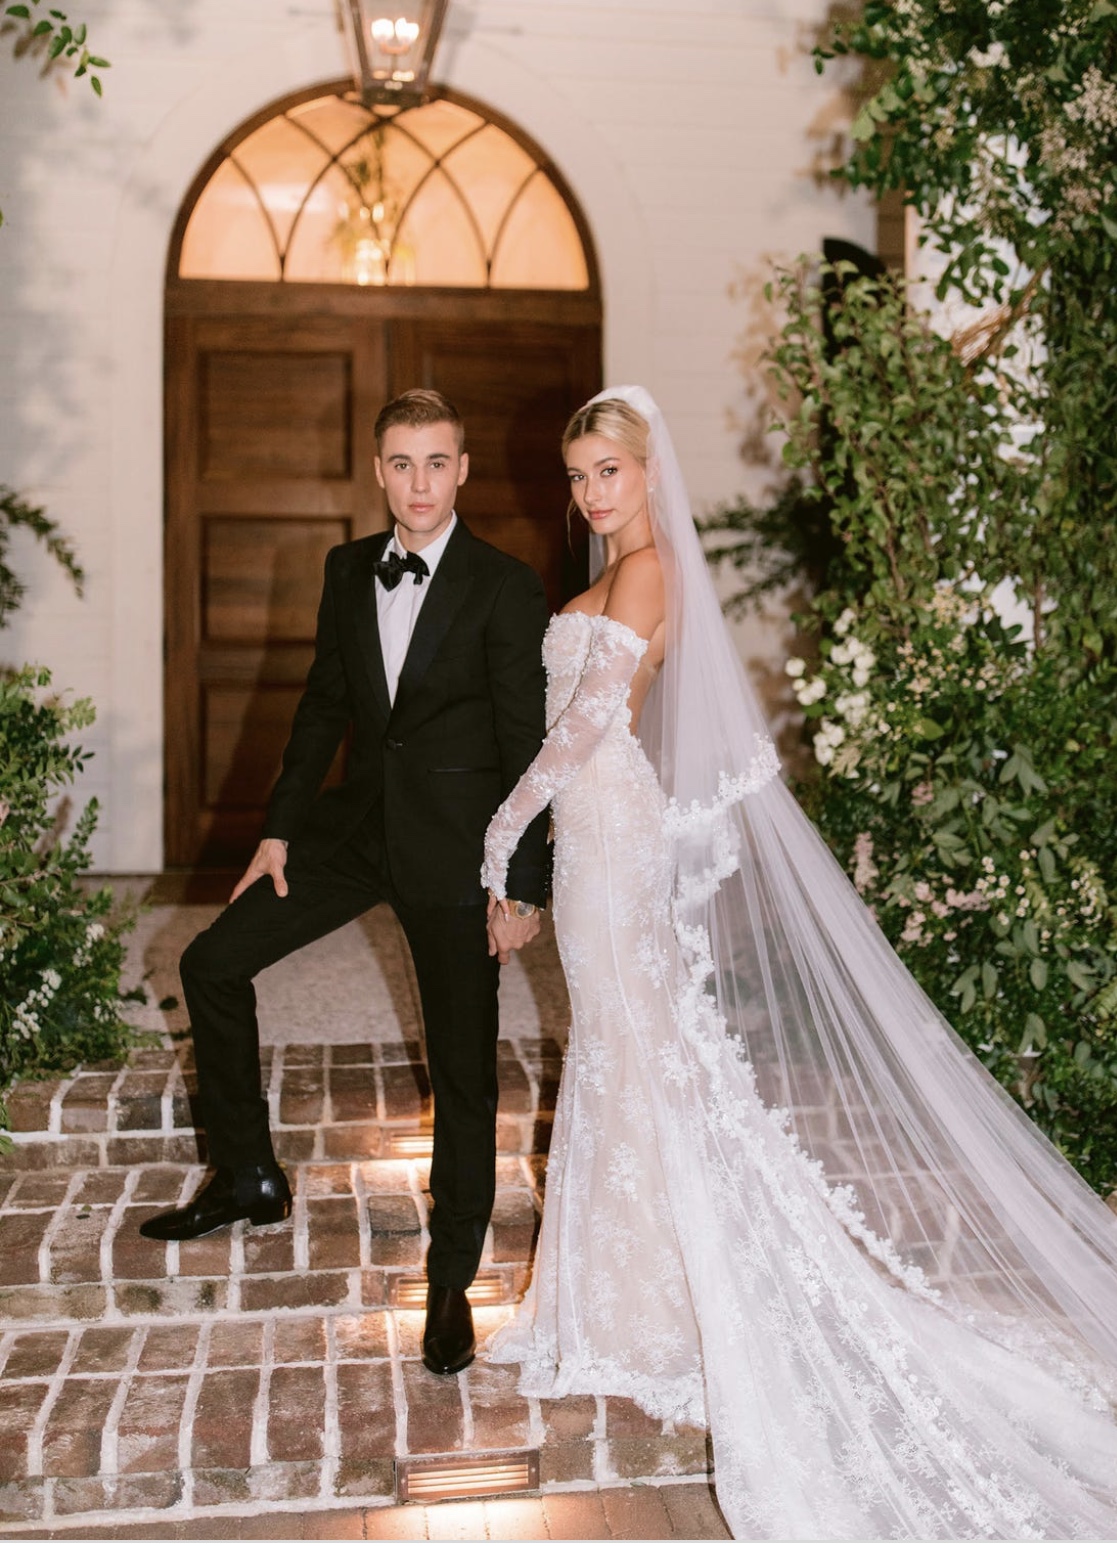 Ảnh cưới của Justin Bieber bỗng rầm rộ sau tin giám đốc Louis Vuitton qua đời, hóa ra vì váy cưới của Hailey và ý nghĩa đằng sau - Ảnh 10.